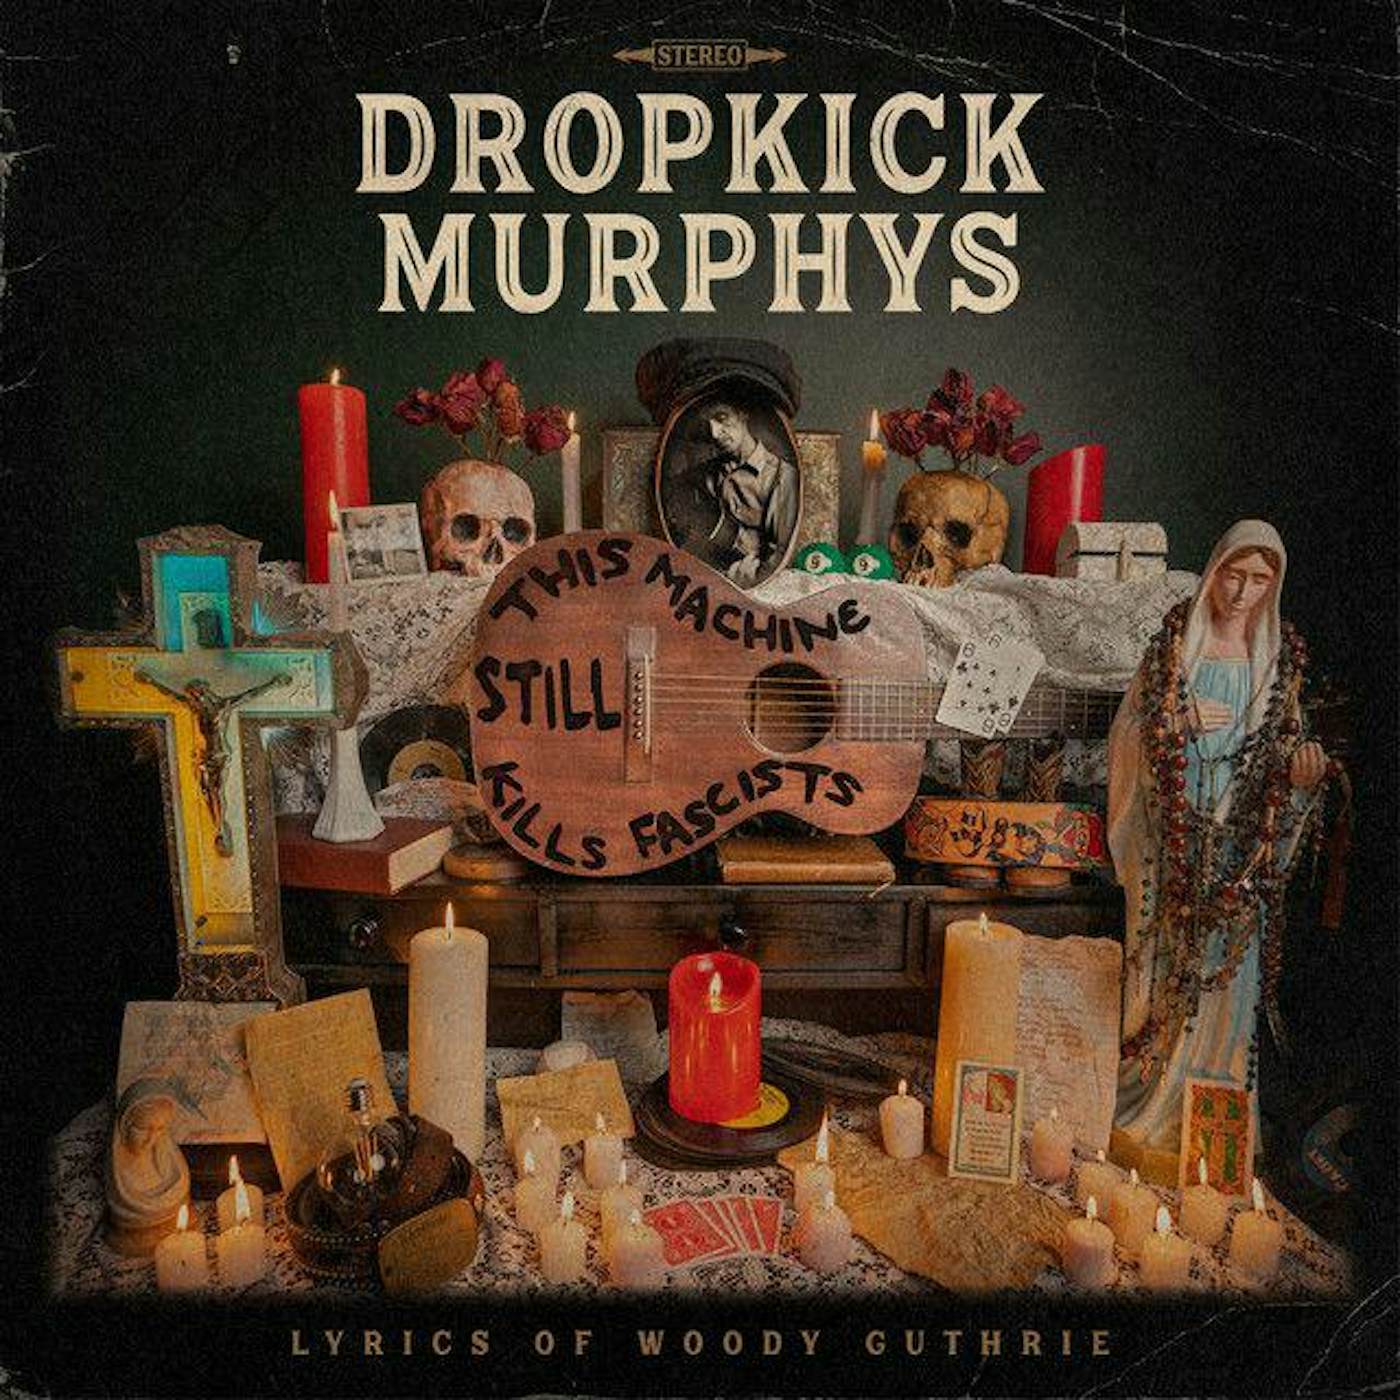 Dropkick Murphys This Machine Still Kills Fascists Vinyl Record